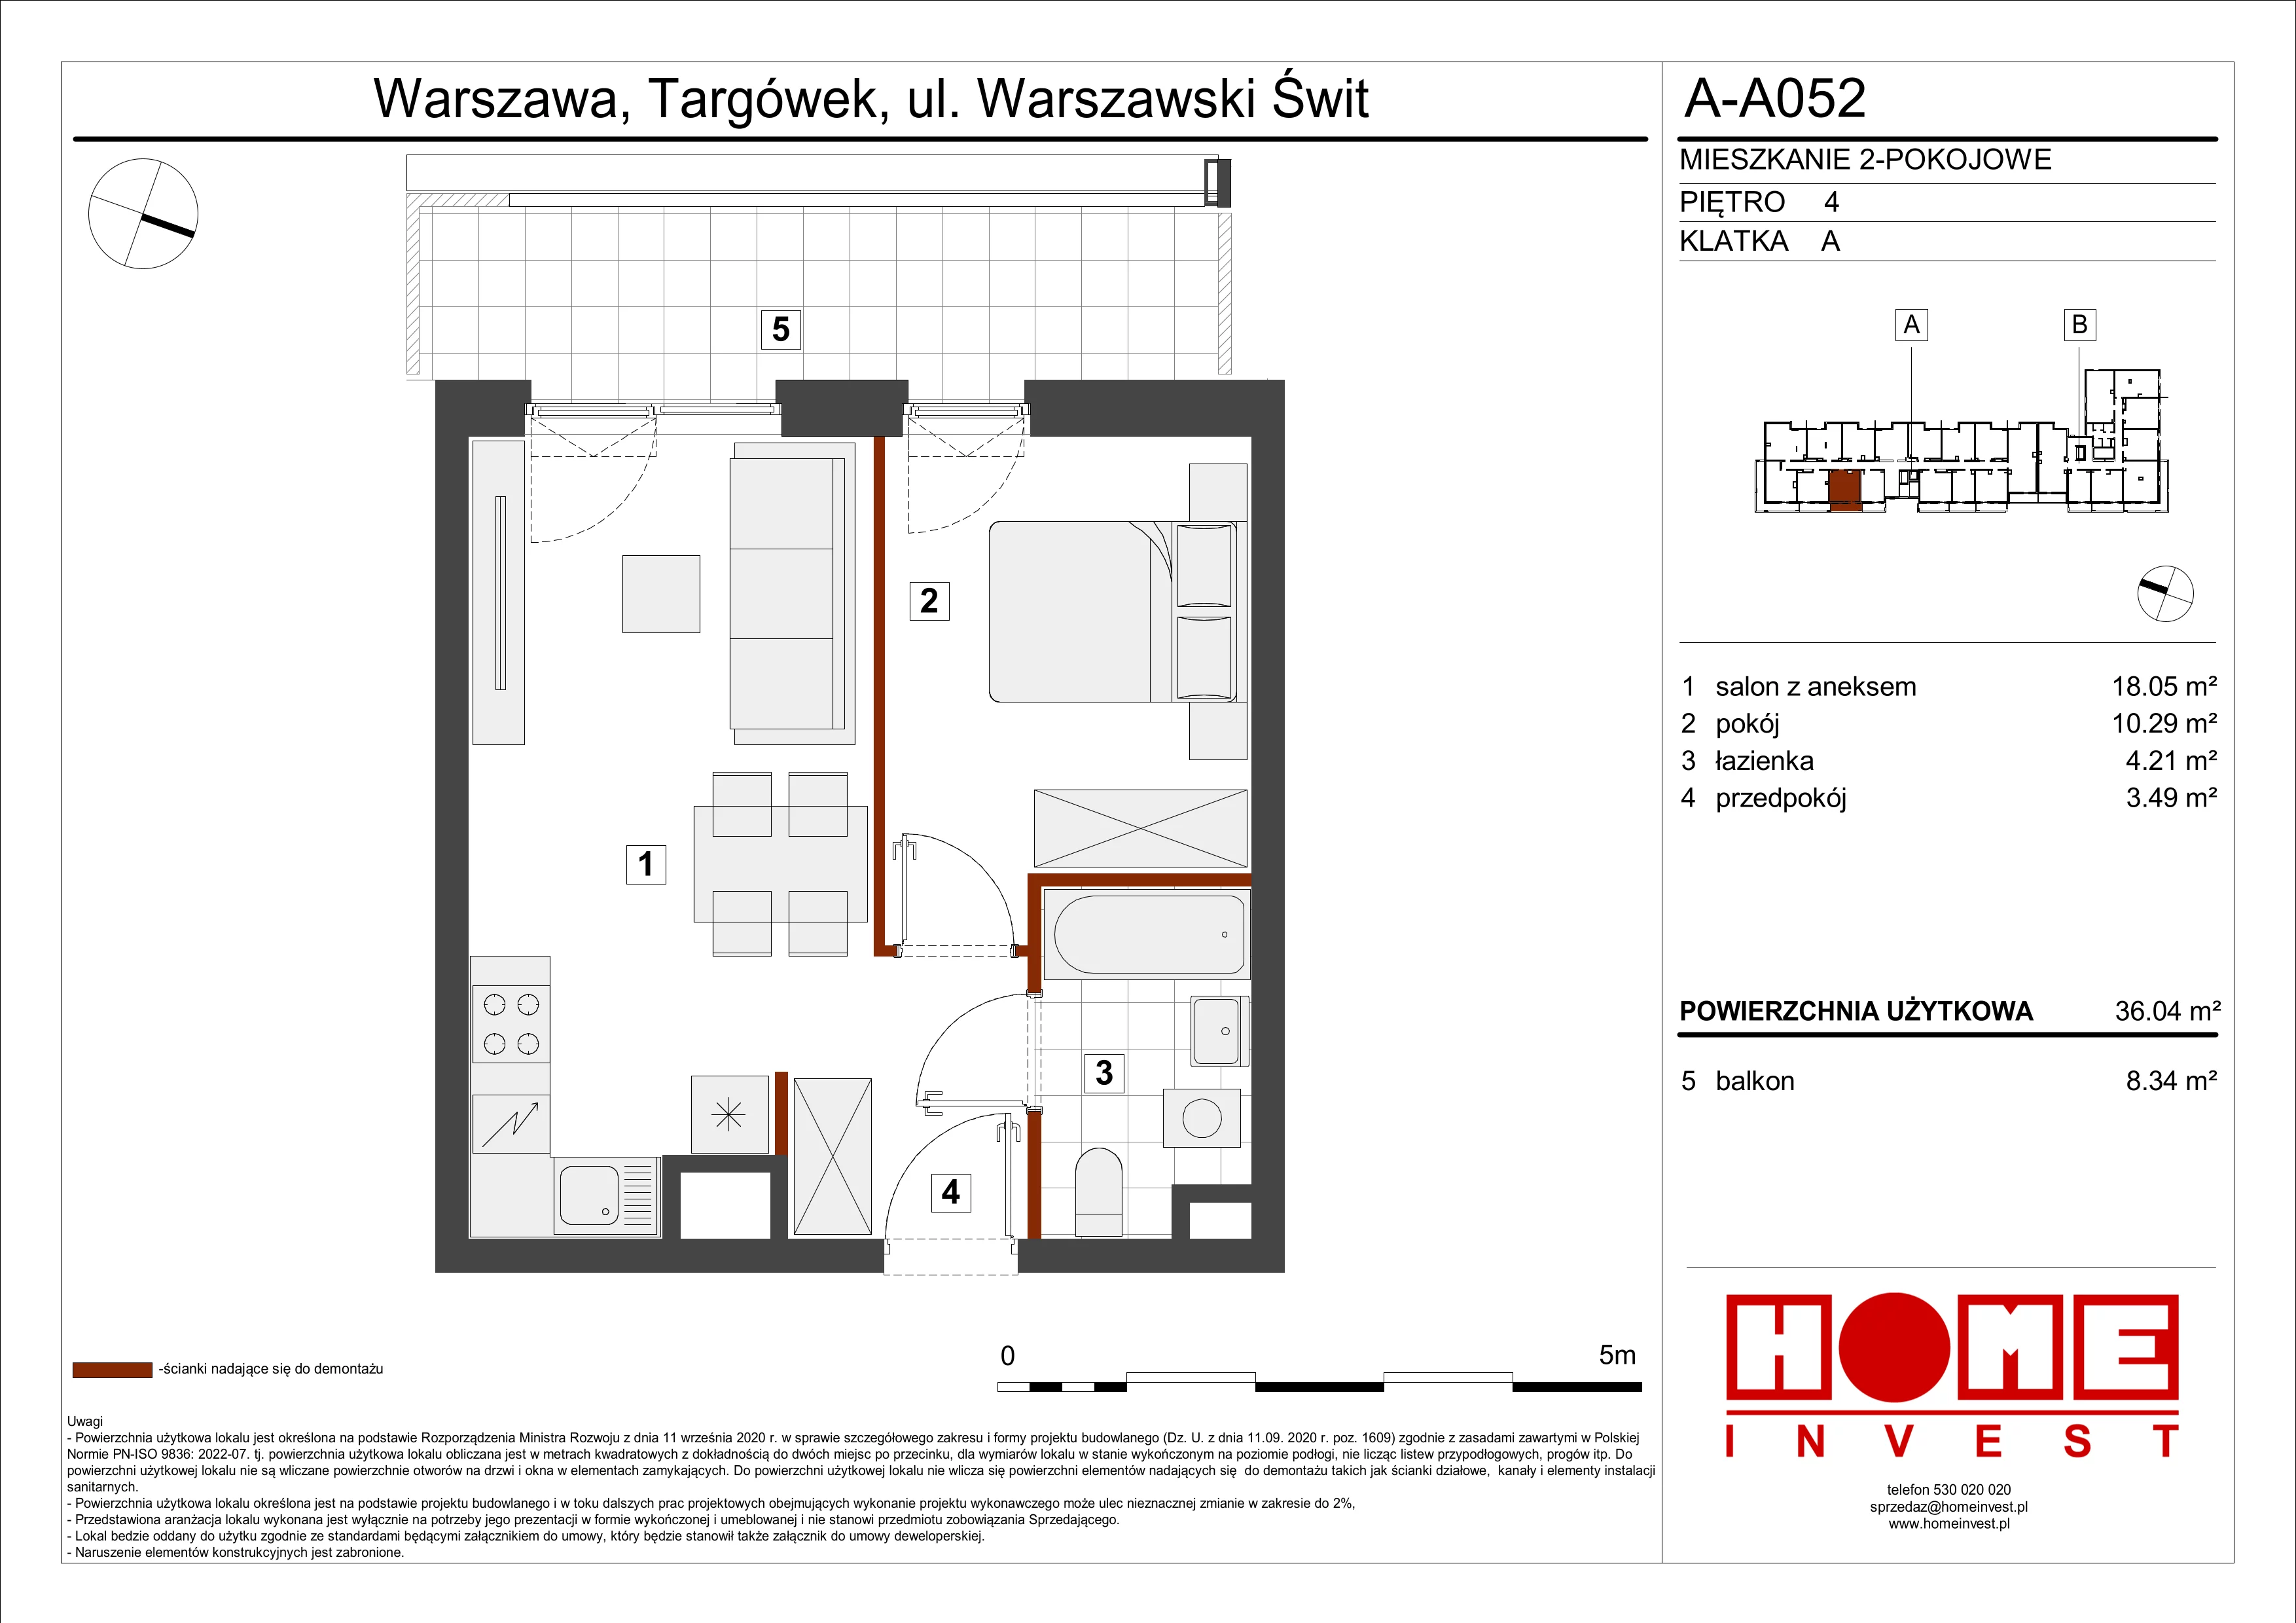 Mieszkanie 36,04 m², piętro 4, oferta nr A-A052, Warszawski Świt, Warszawa, Targówek, Bródno, ul. Warszawski Świt 5